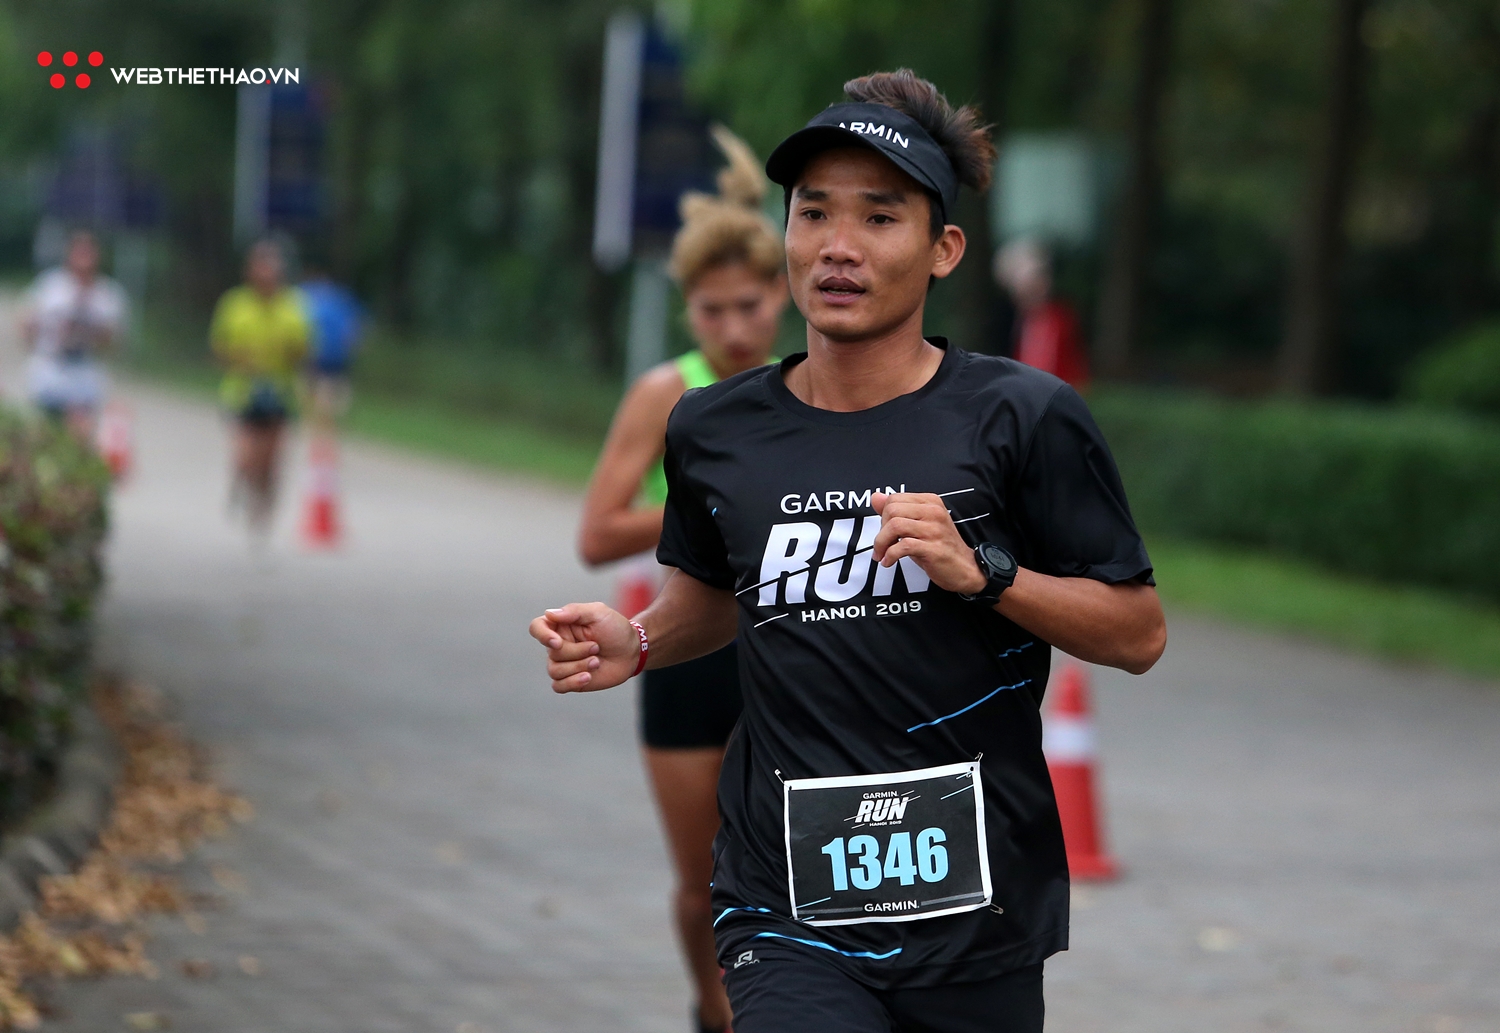 Hàng trăm runner sải bước tại Garmin Run Hanoi 2019 dưới cái lạnh 15 độ